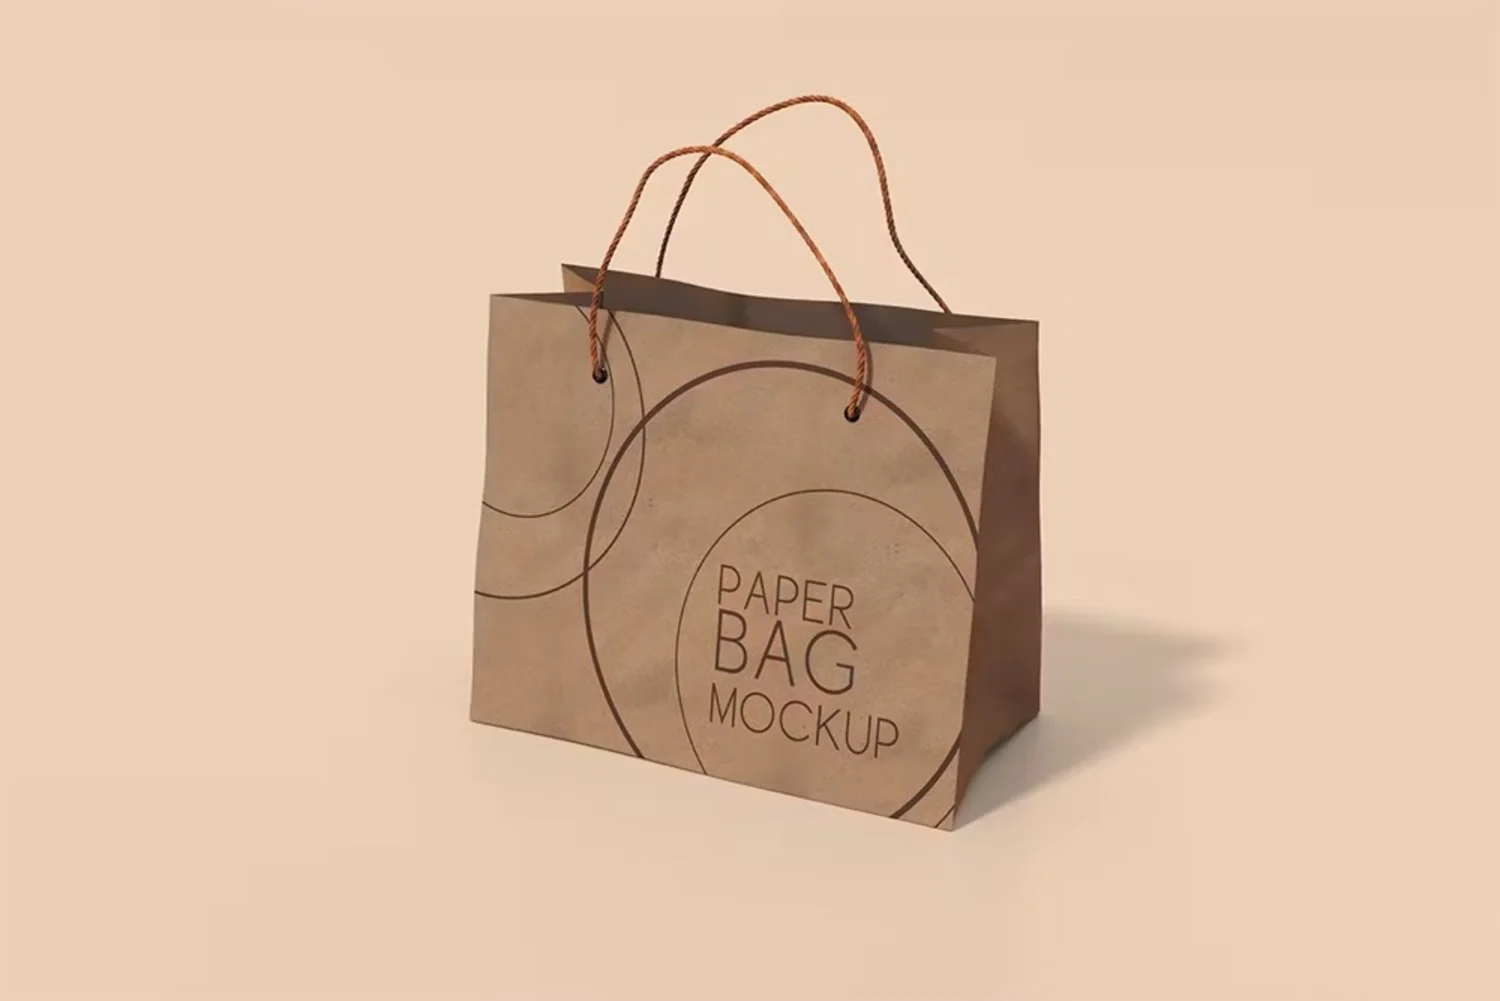 5118 时尚便携牛皮纸手提包装袋设计展示 PSD 样机Paper Bag Mockup@GOOODME.COM